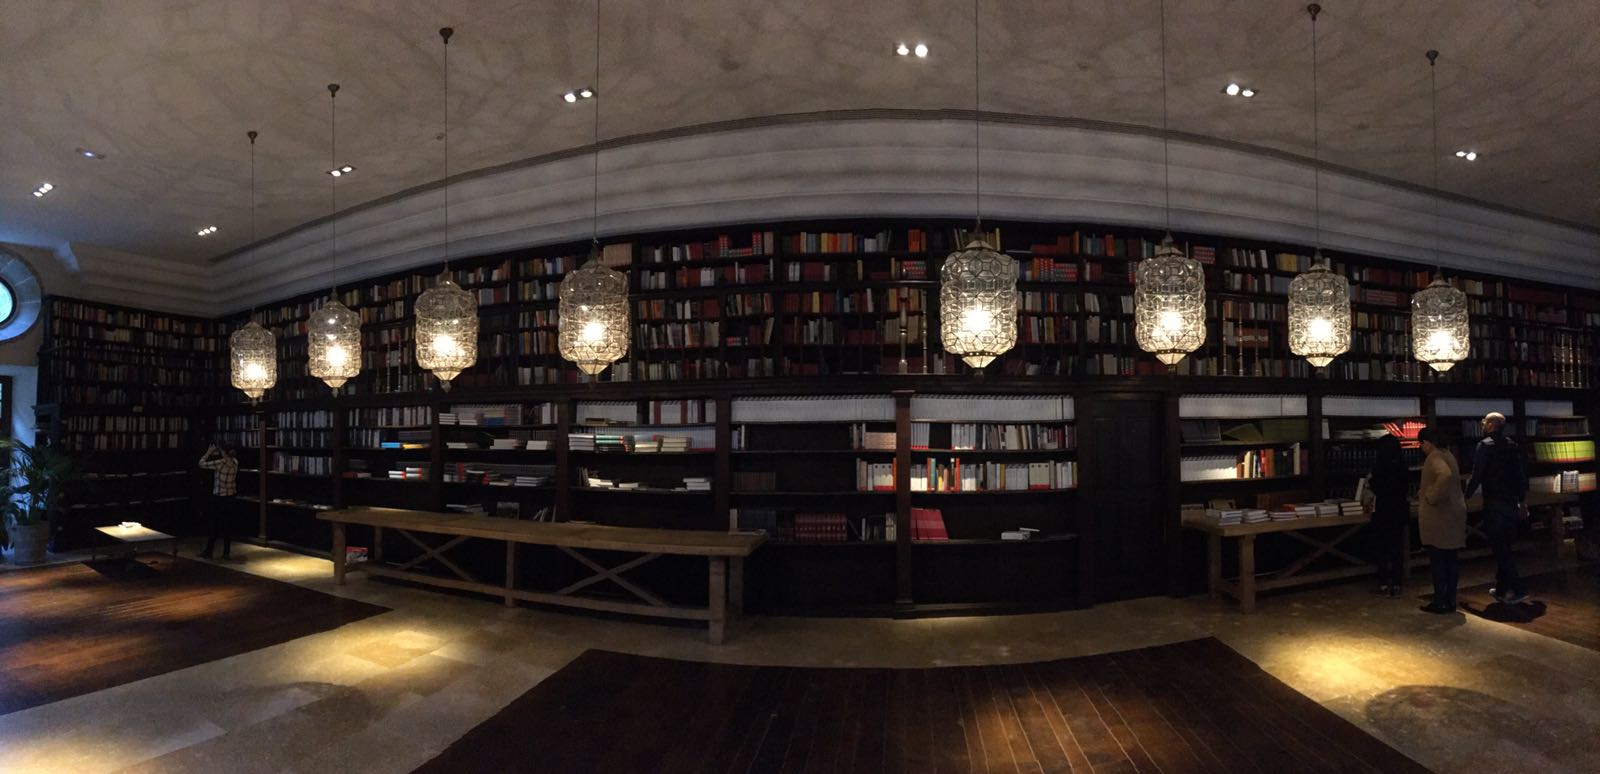 Biblioteca Parador de Corias